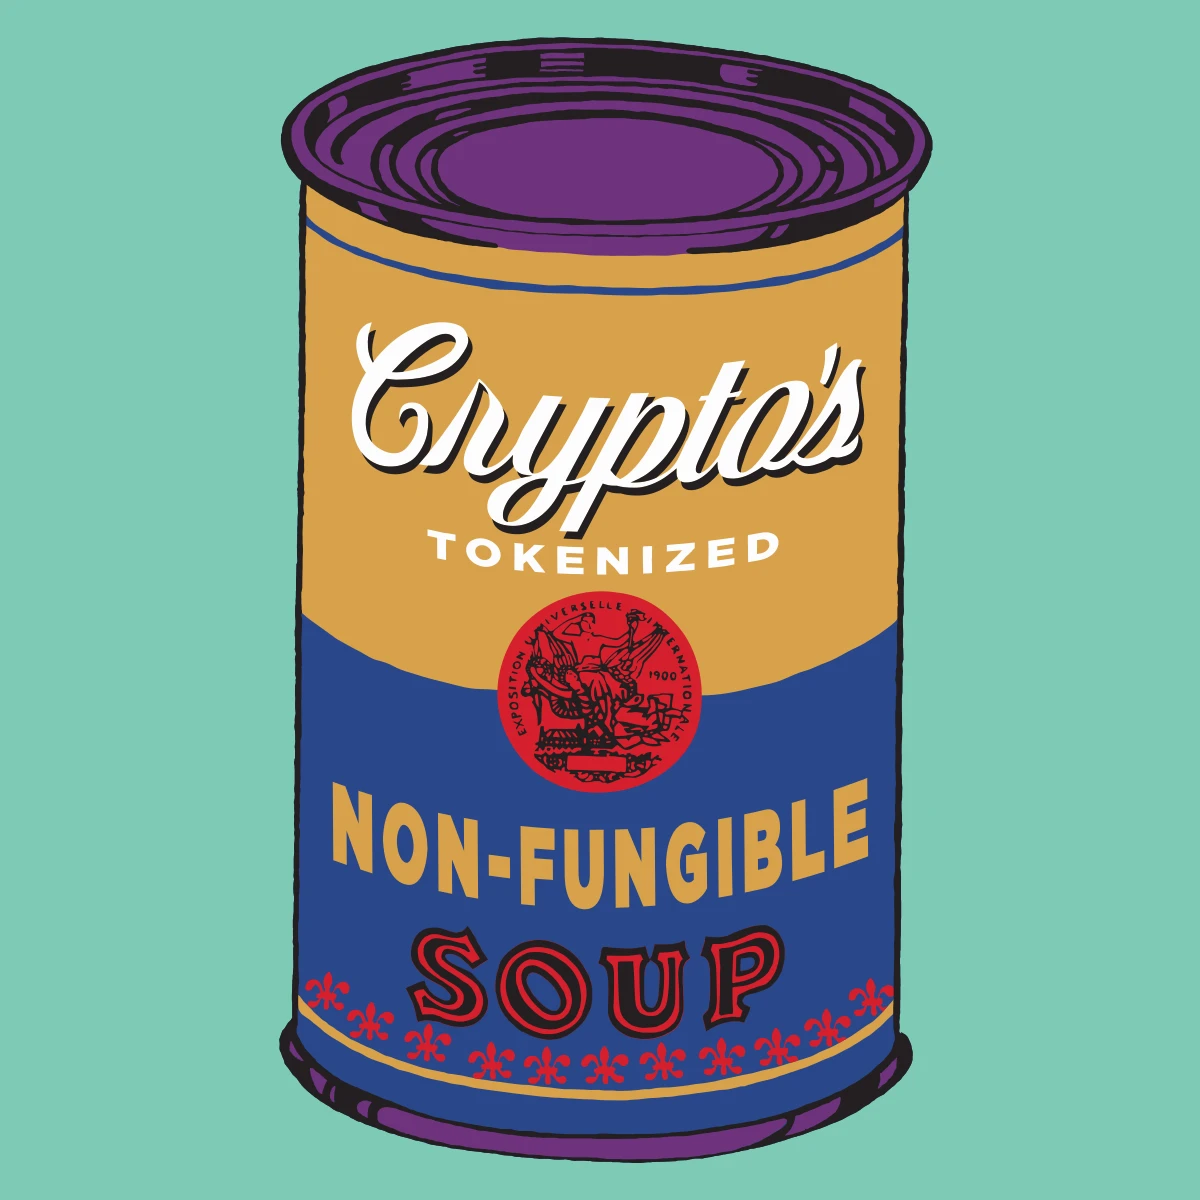 Non-Fungible Soup #1886